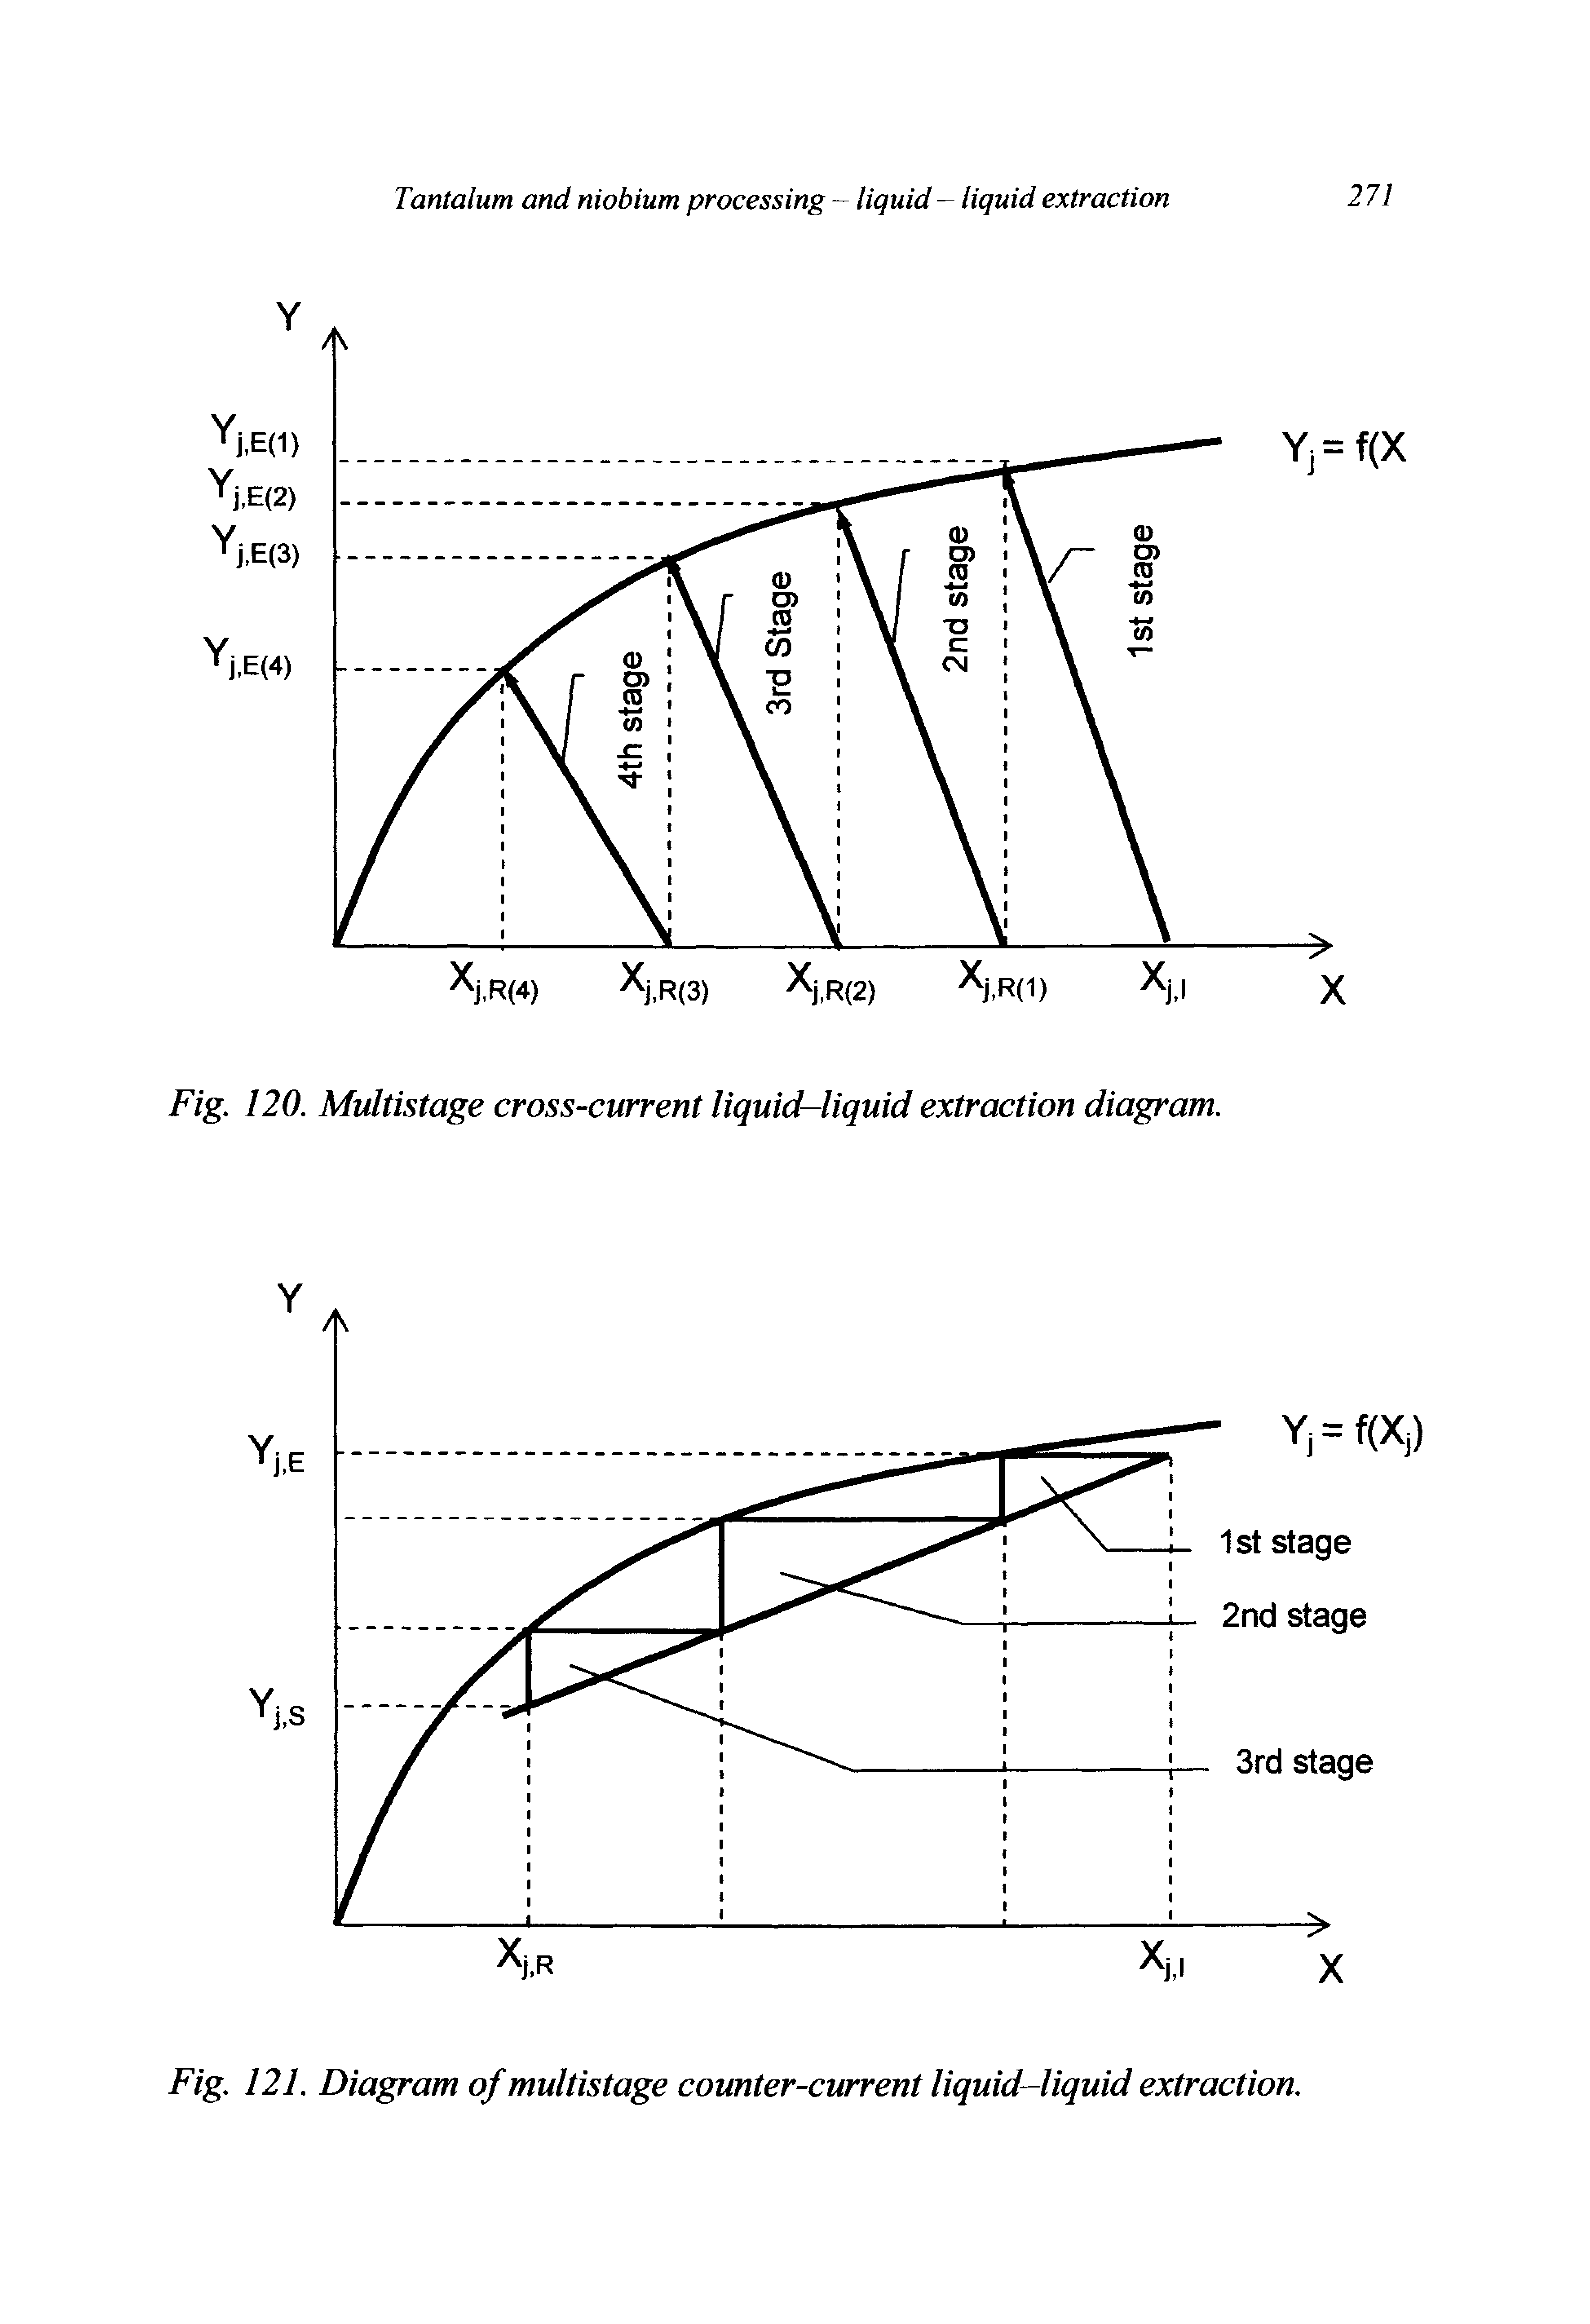 Fig. 120. Multistage cross-current liquid-liquid extraction diagram.